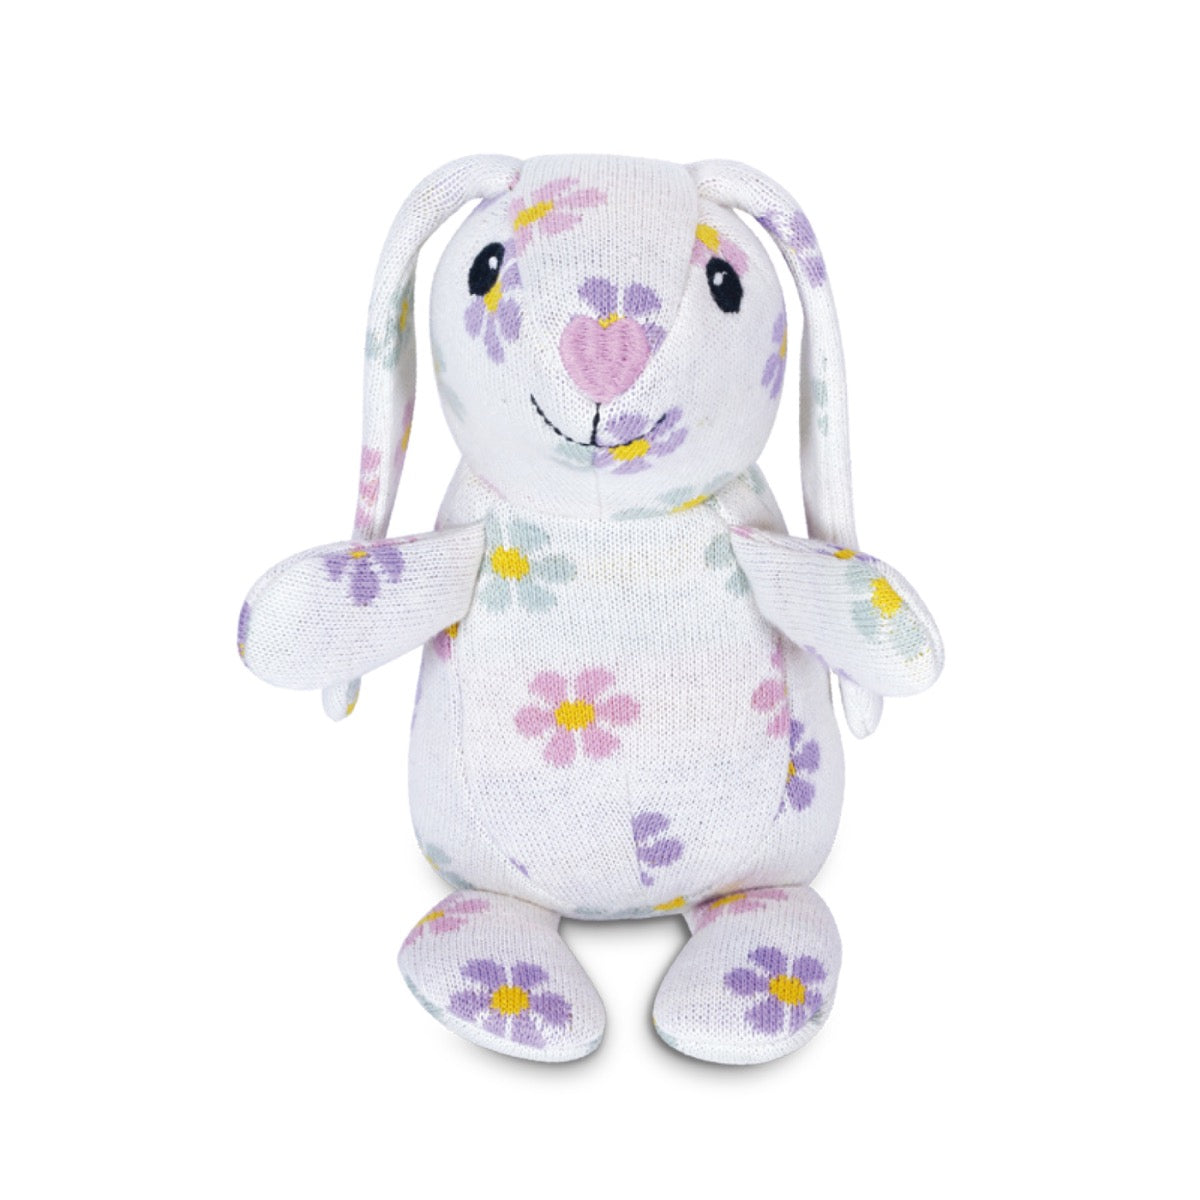 Knit Patterned Bunny Plush - Daisy